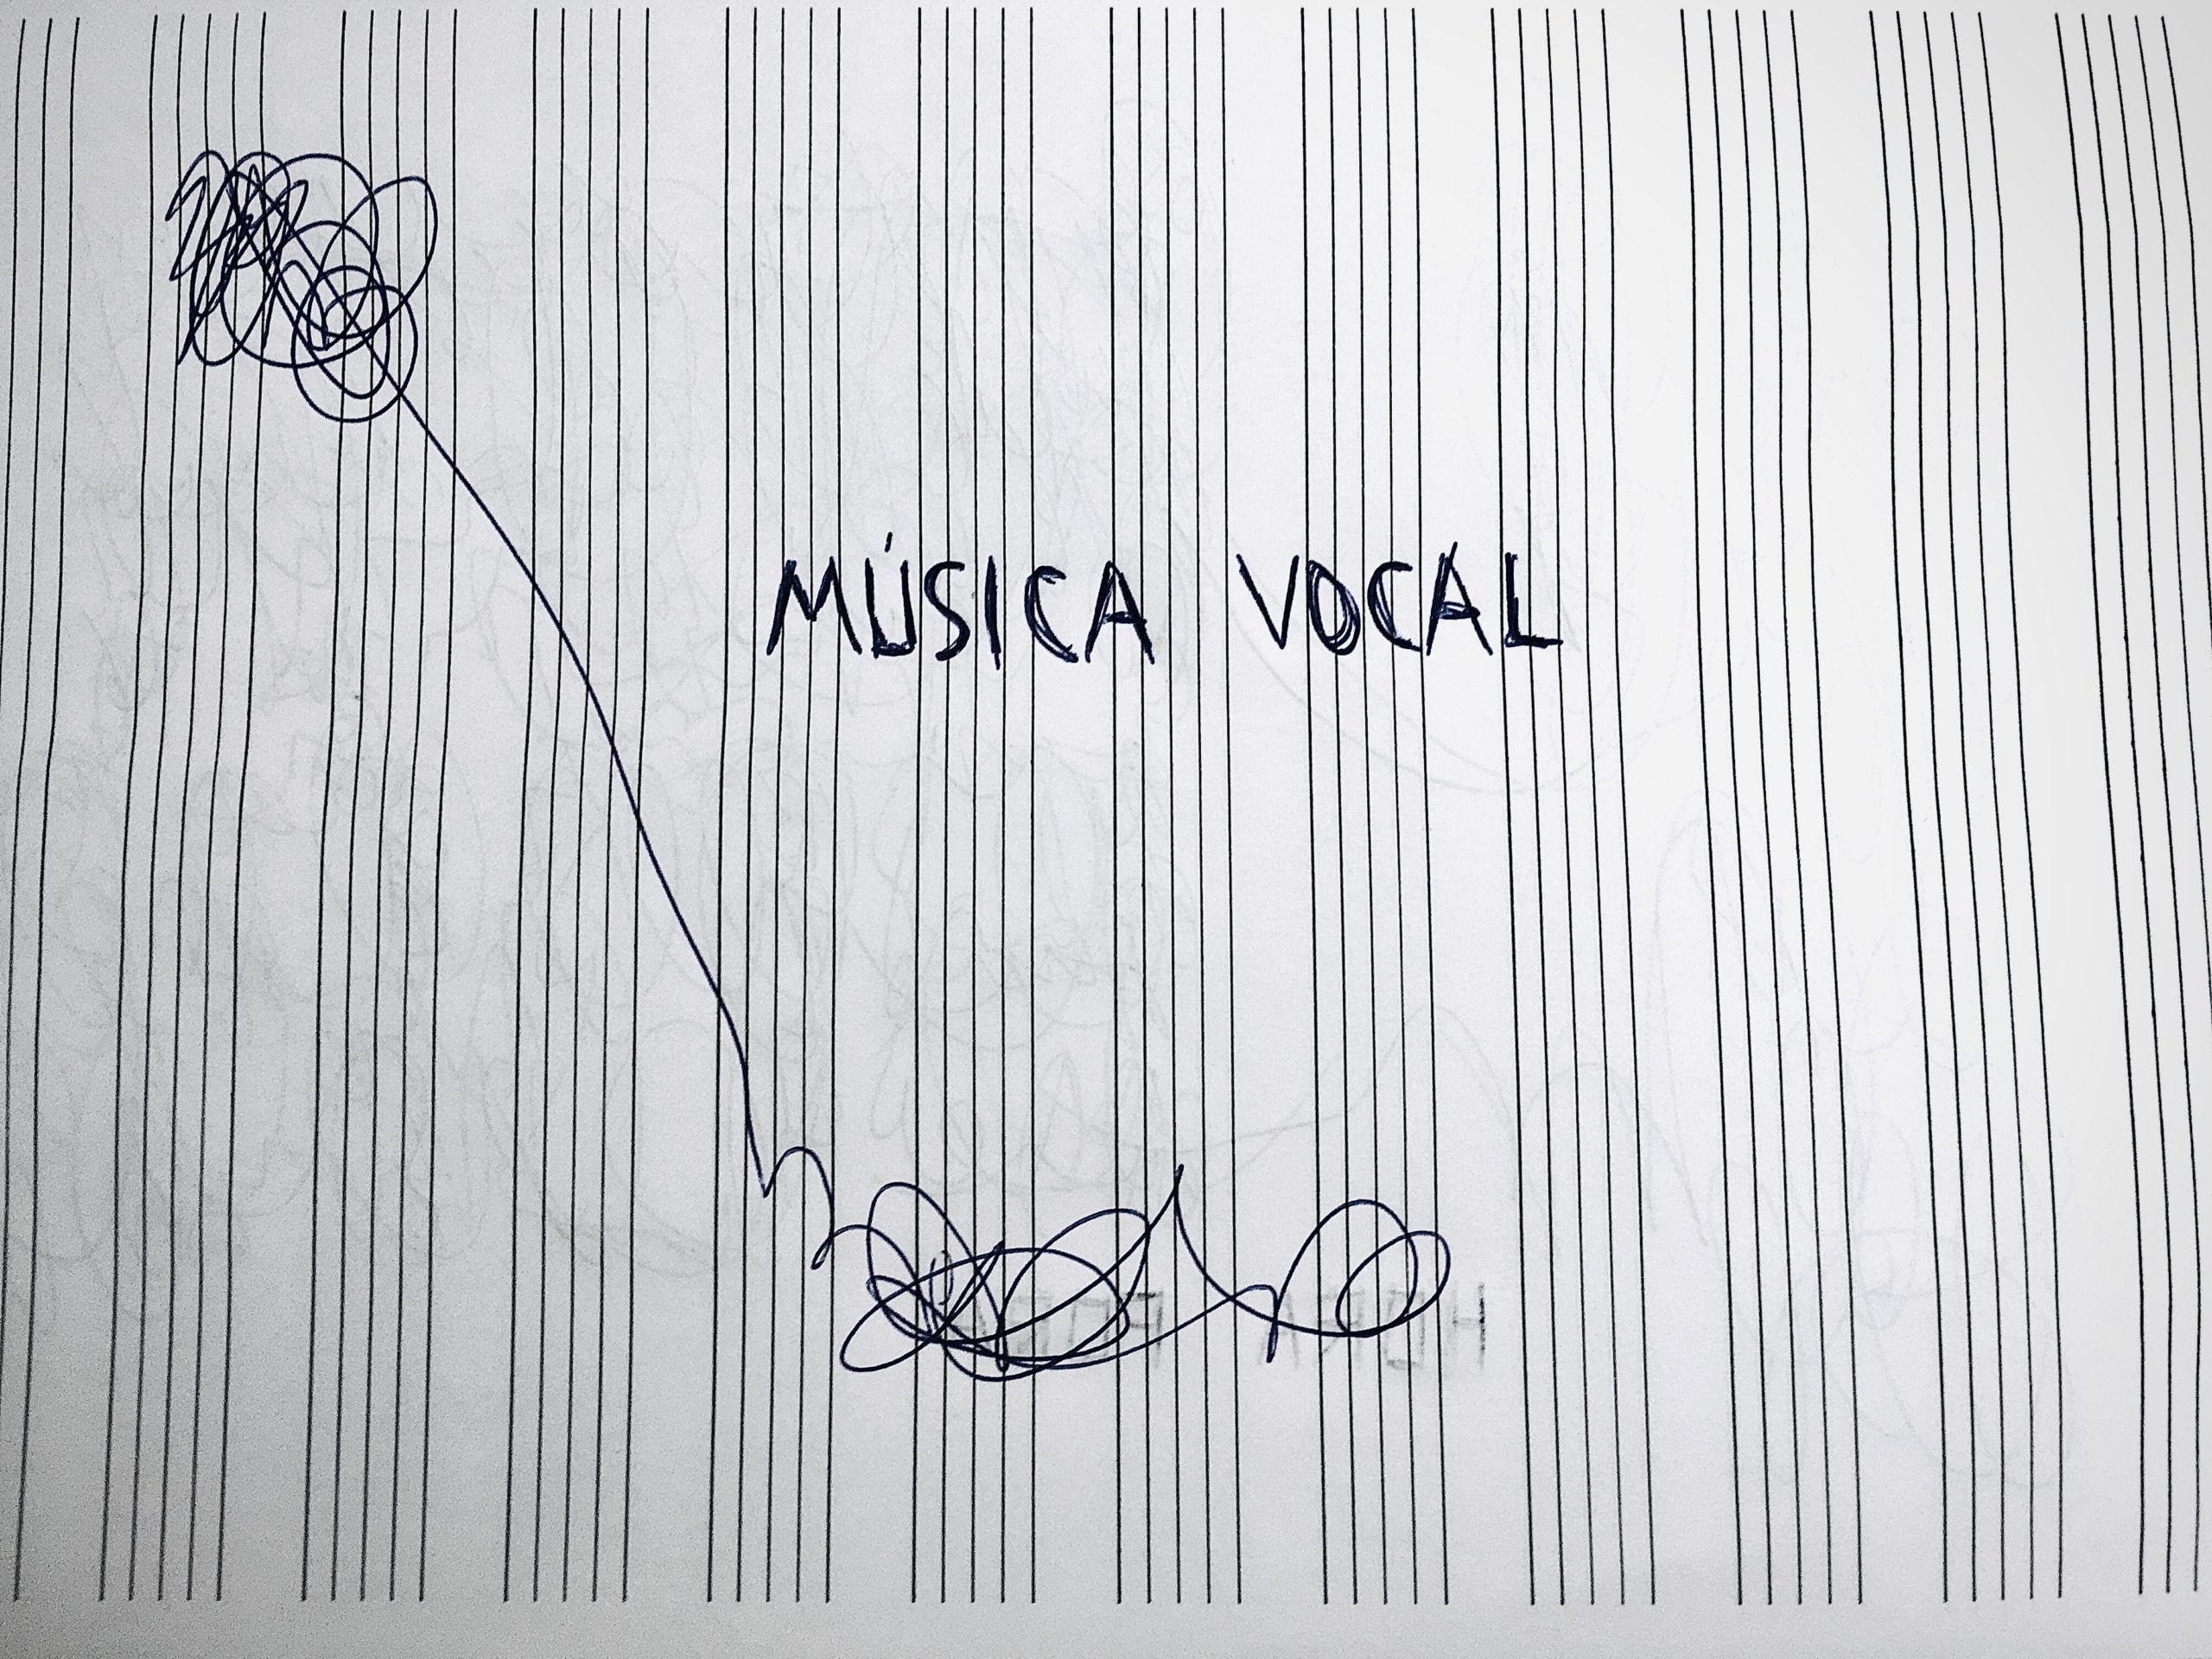 Música Vocal